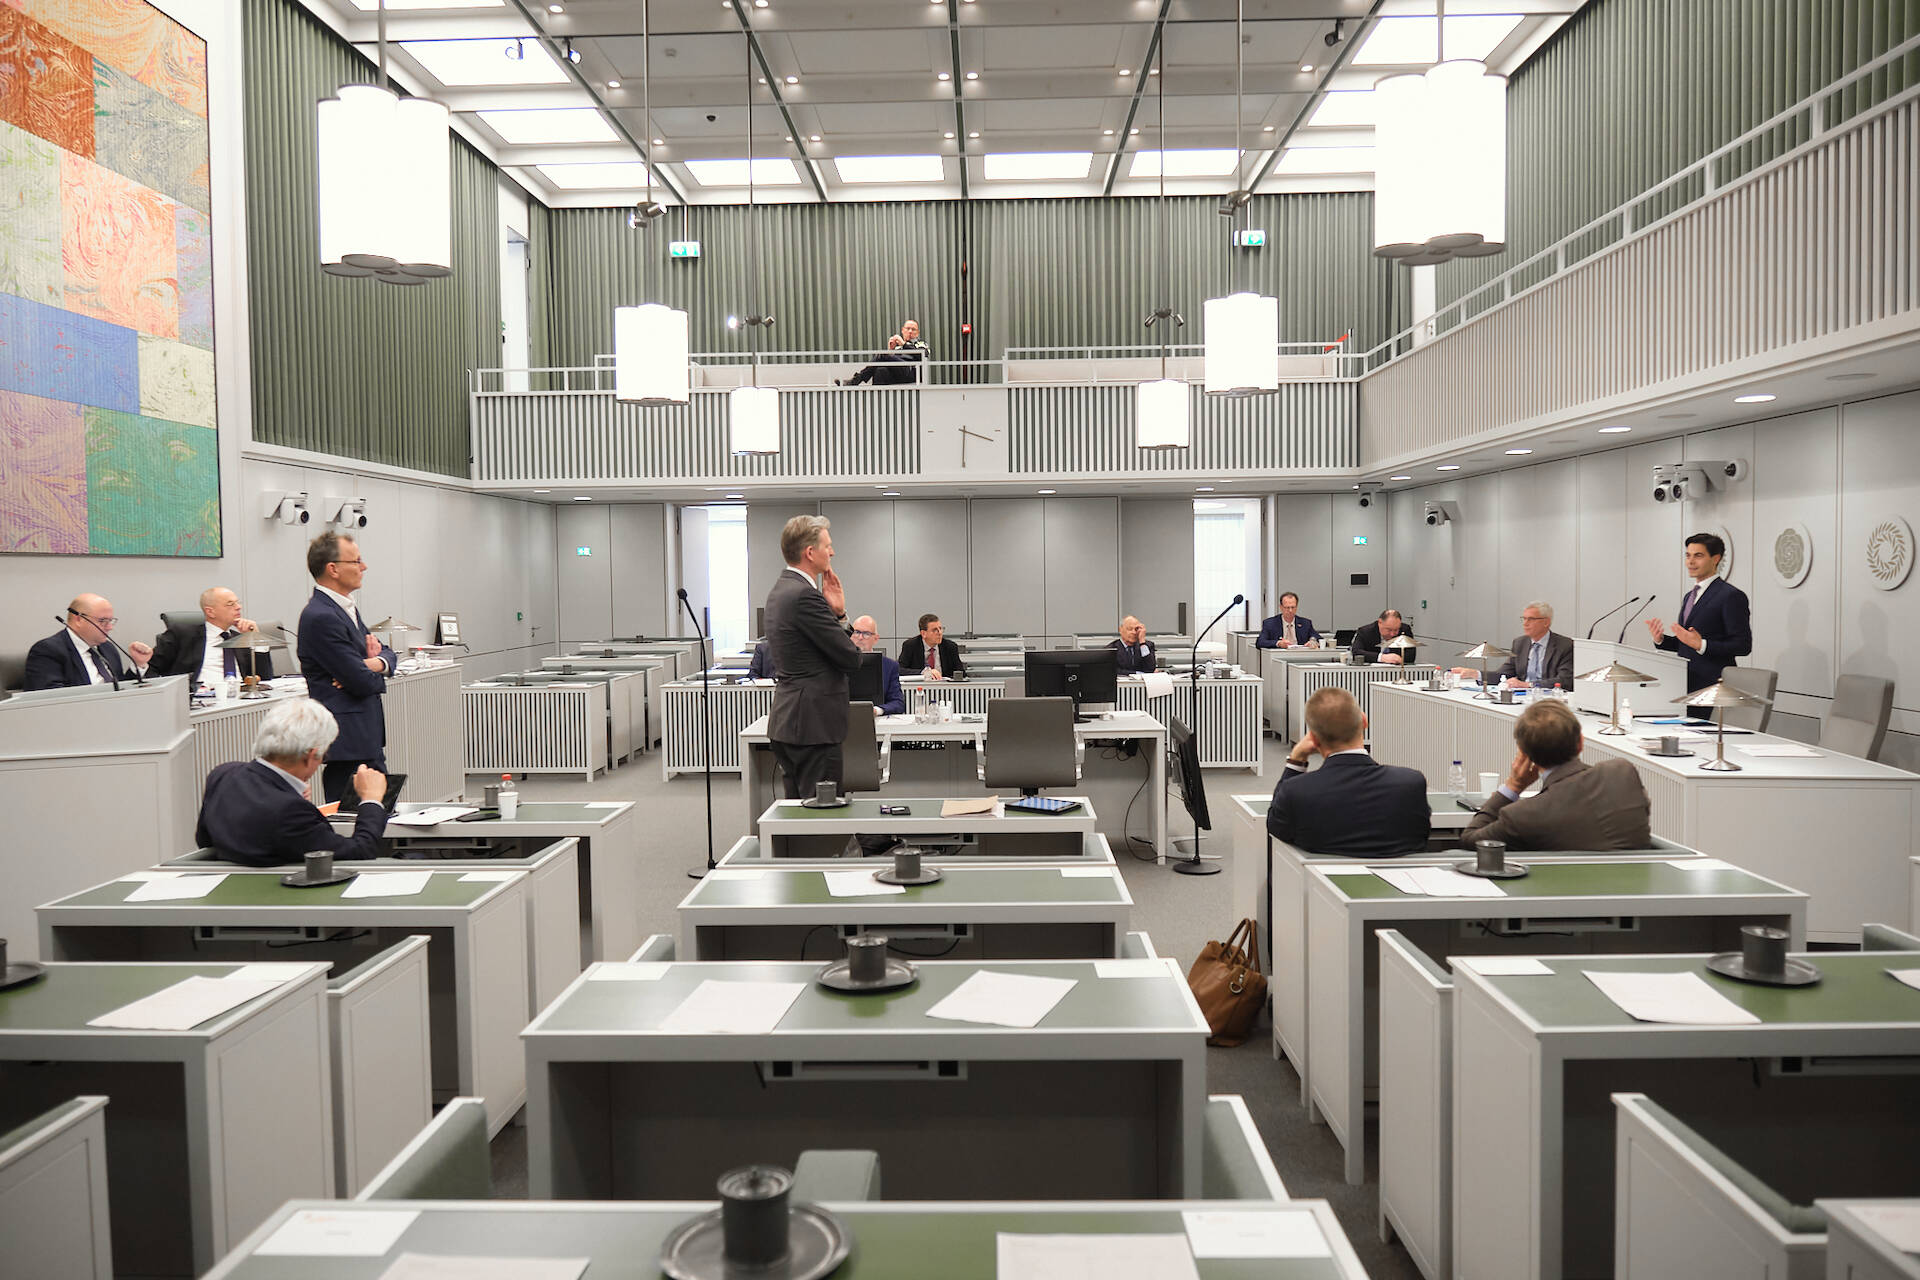 De Kamer tijdens het debat op 8 maart 2022